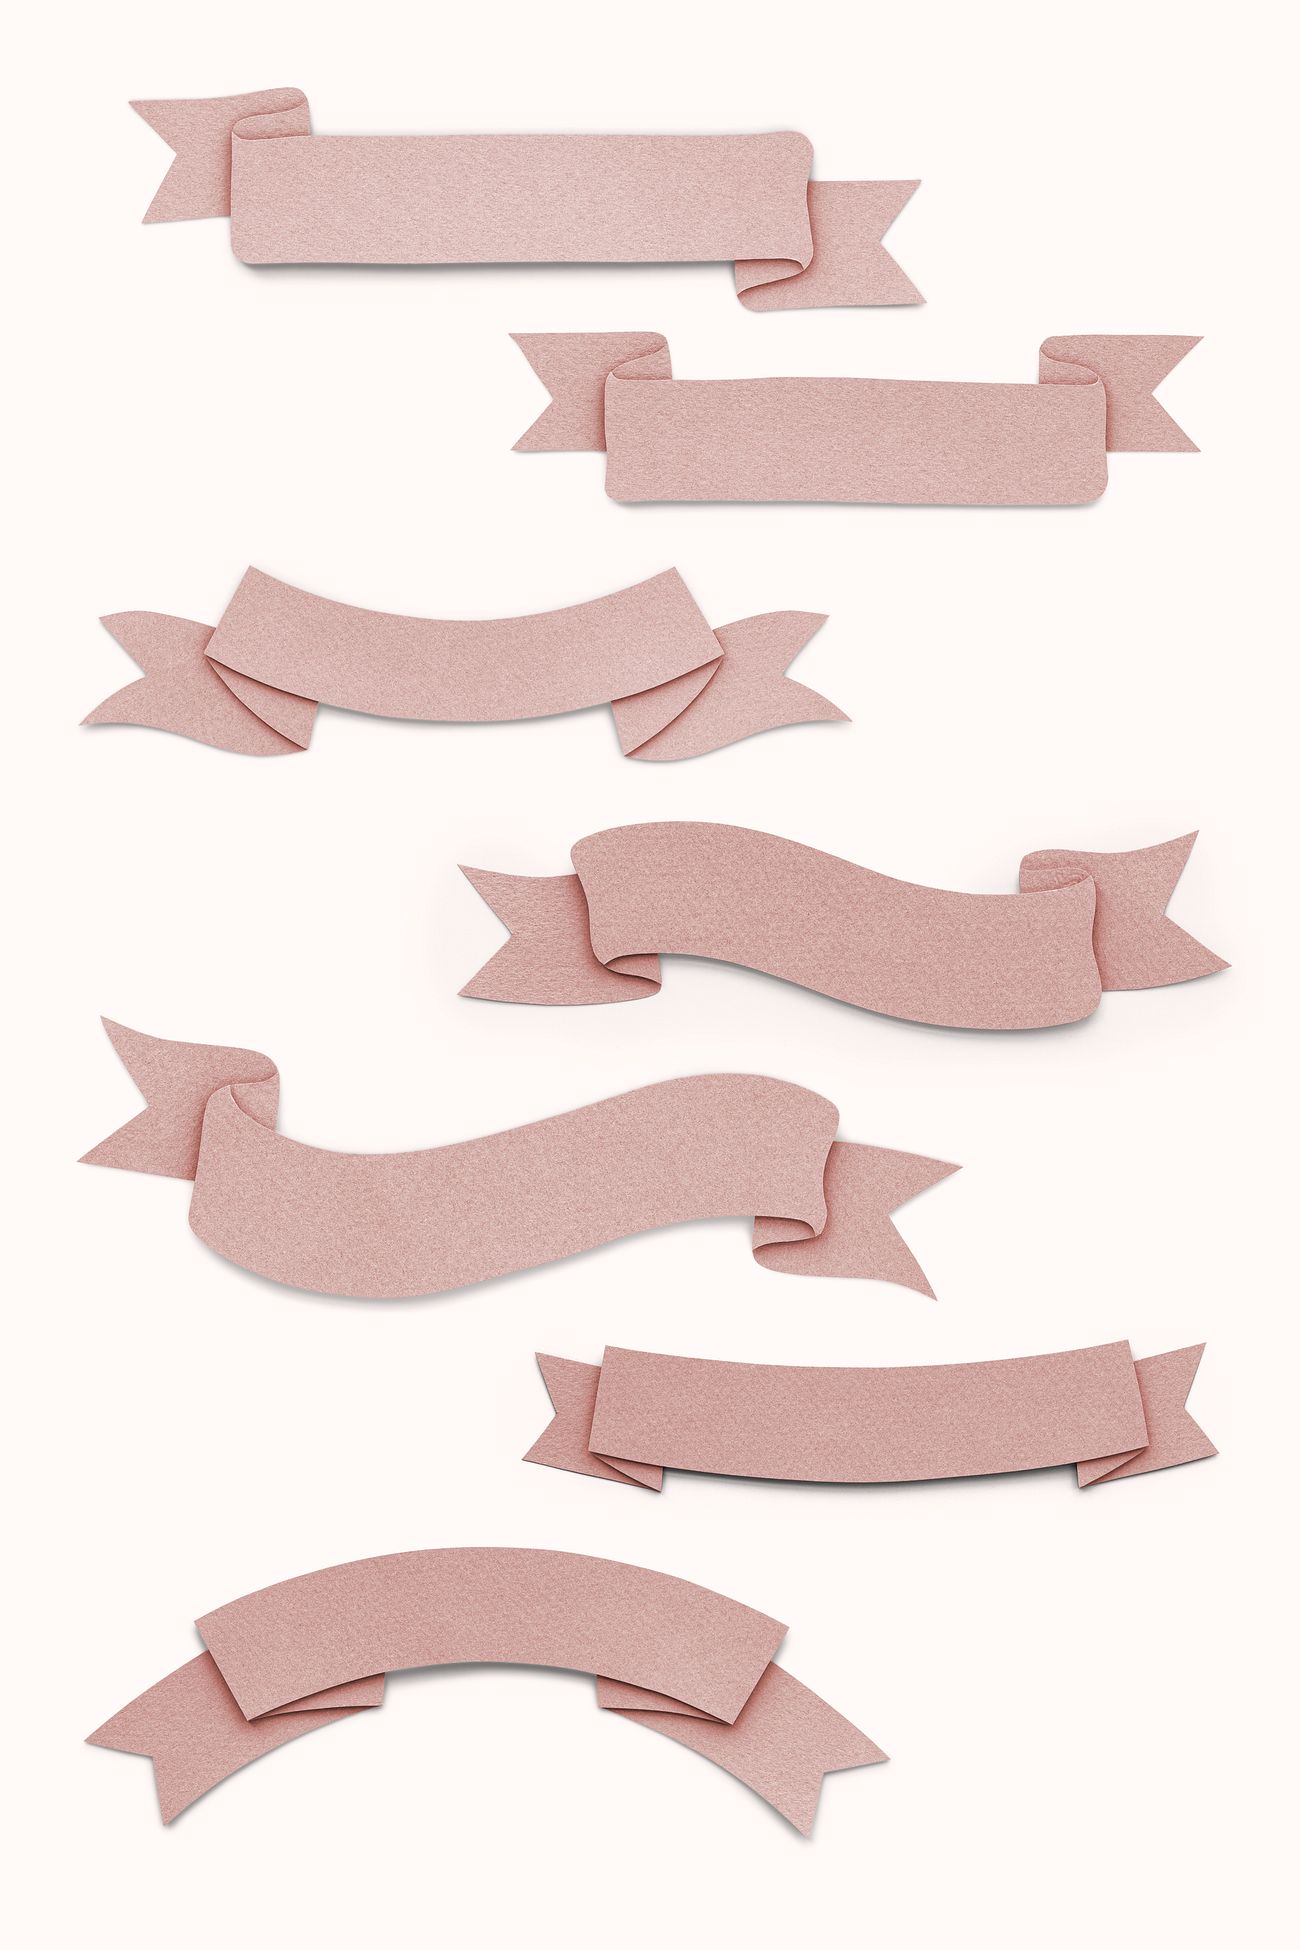 Download Paper craft ribbon set | Royalty free psd mockup - 1202535